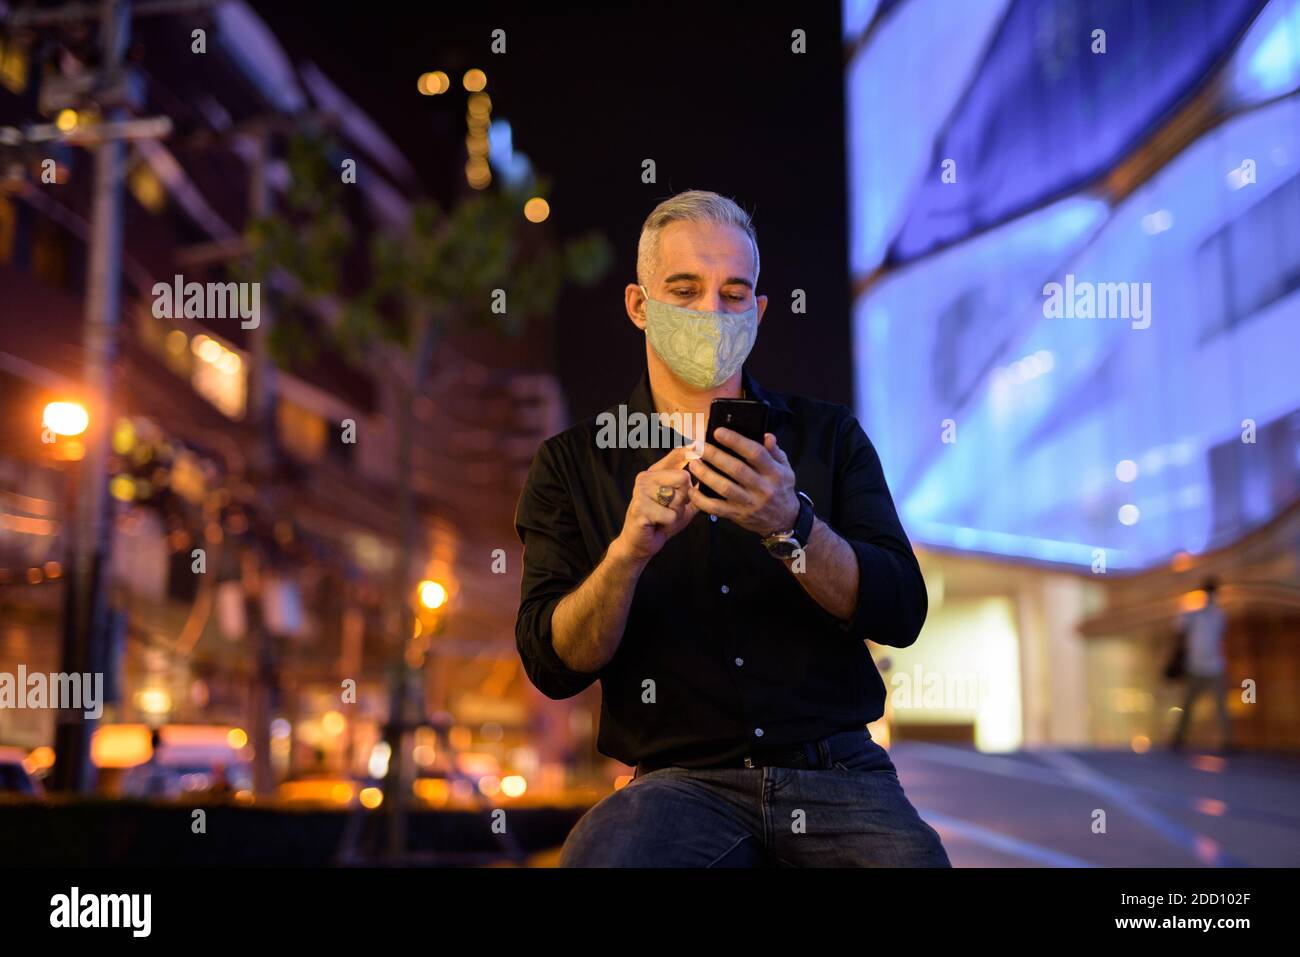 Uomo di notte per strada con maschera facciale protettiva per proteggere dal virus della corona di covid 19 mentre si usa il cellulare telefono Foto Stock